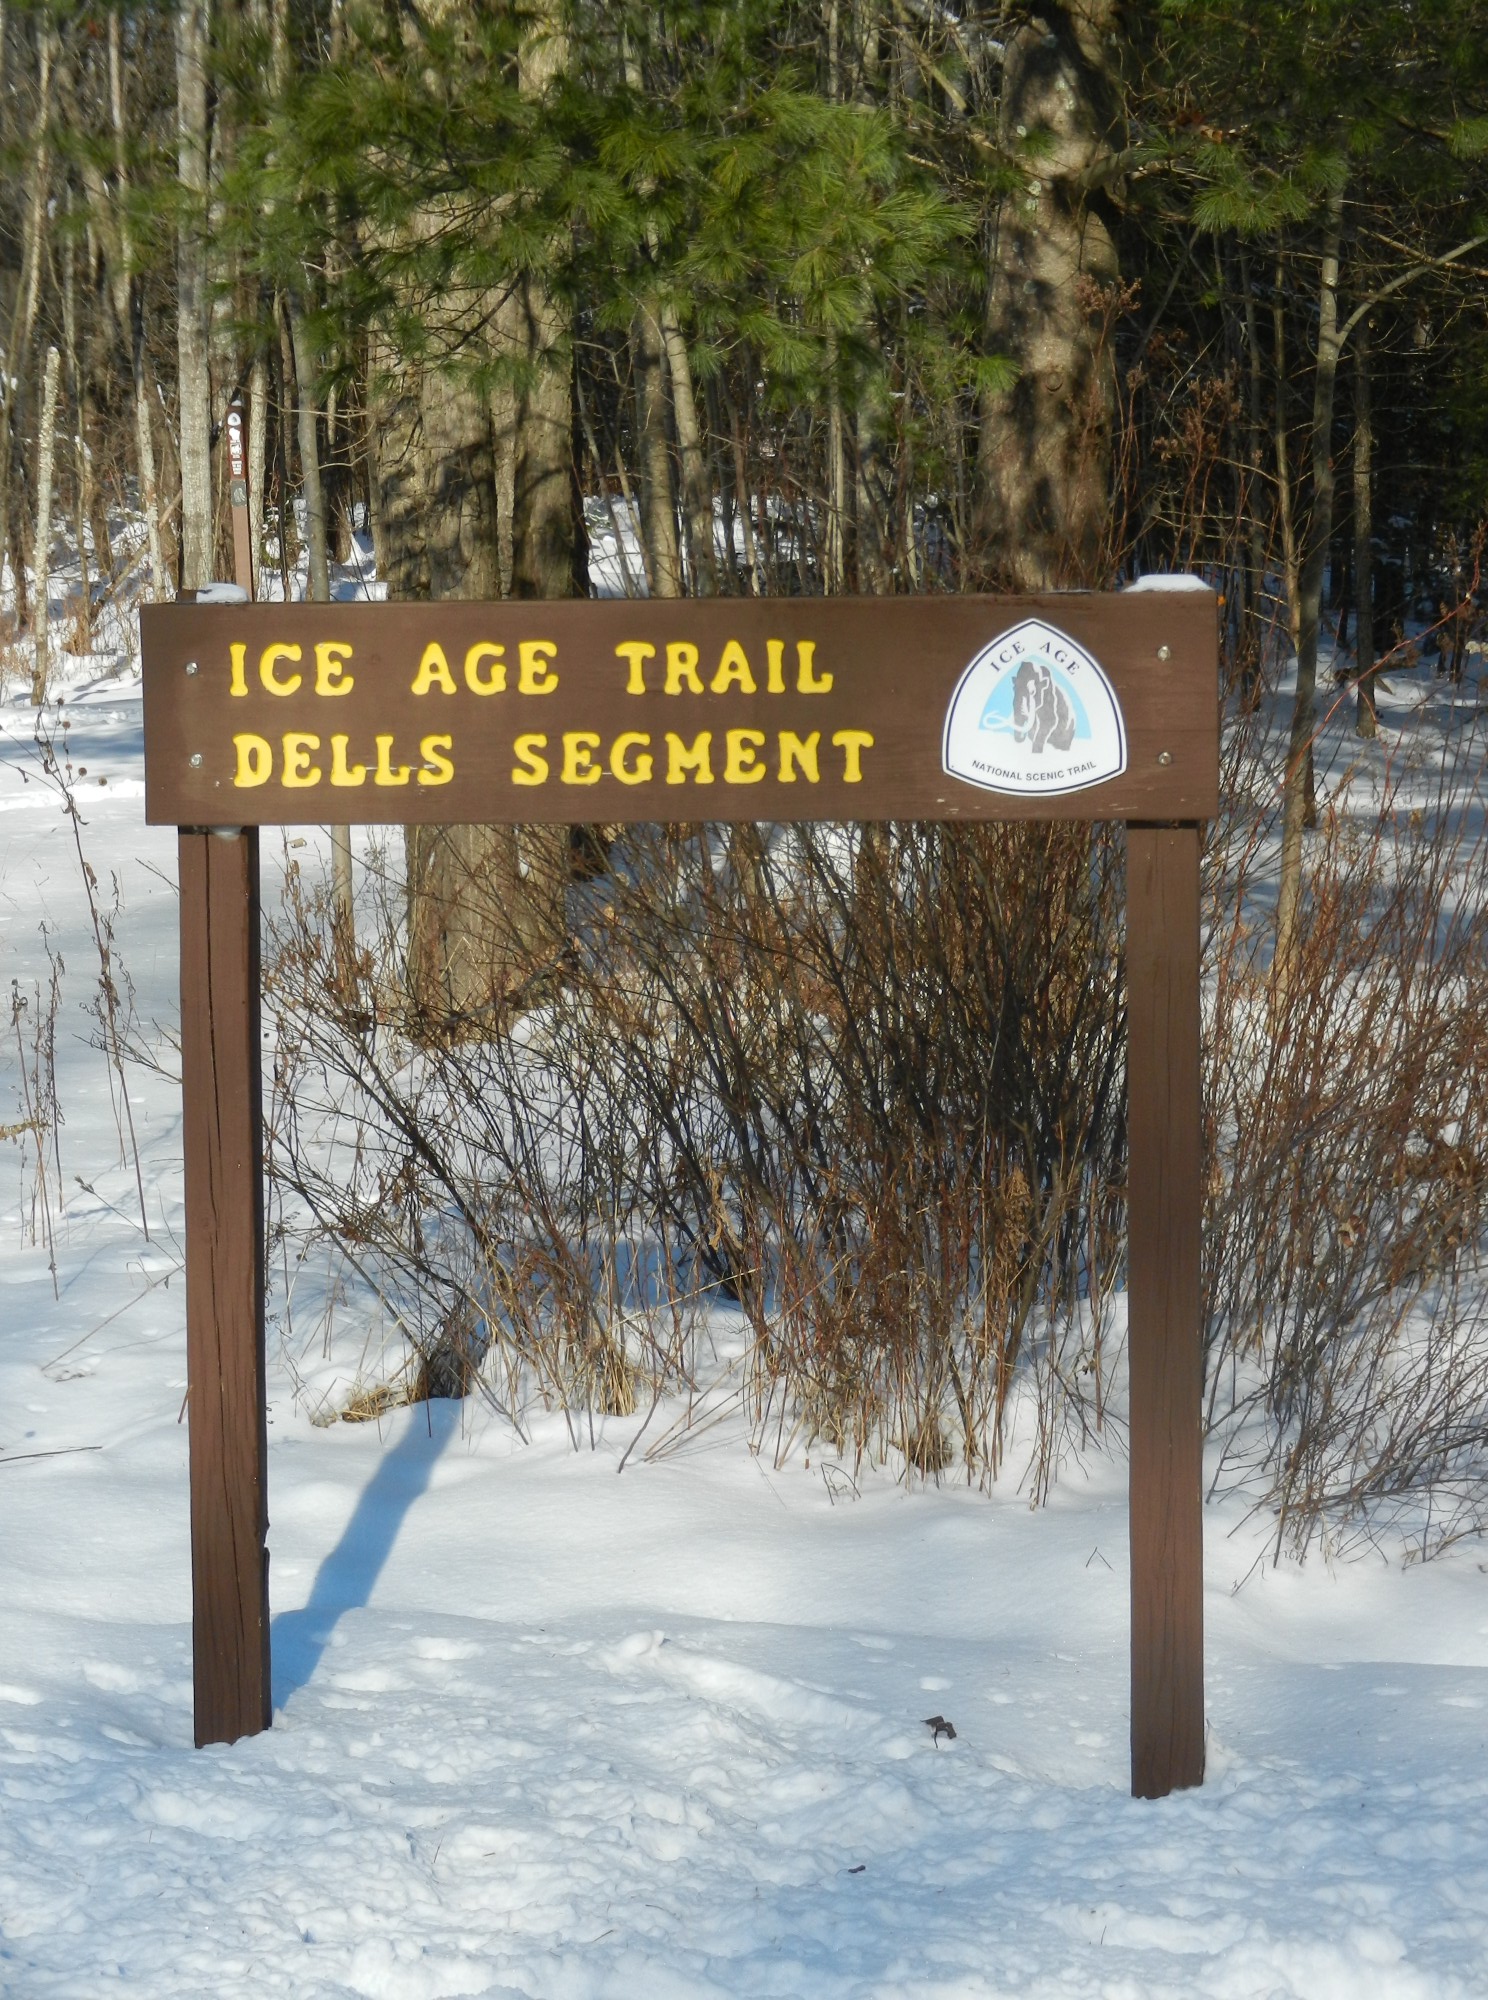 Ice Age Trail Dells Segment sign